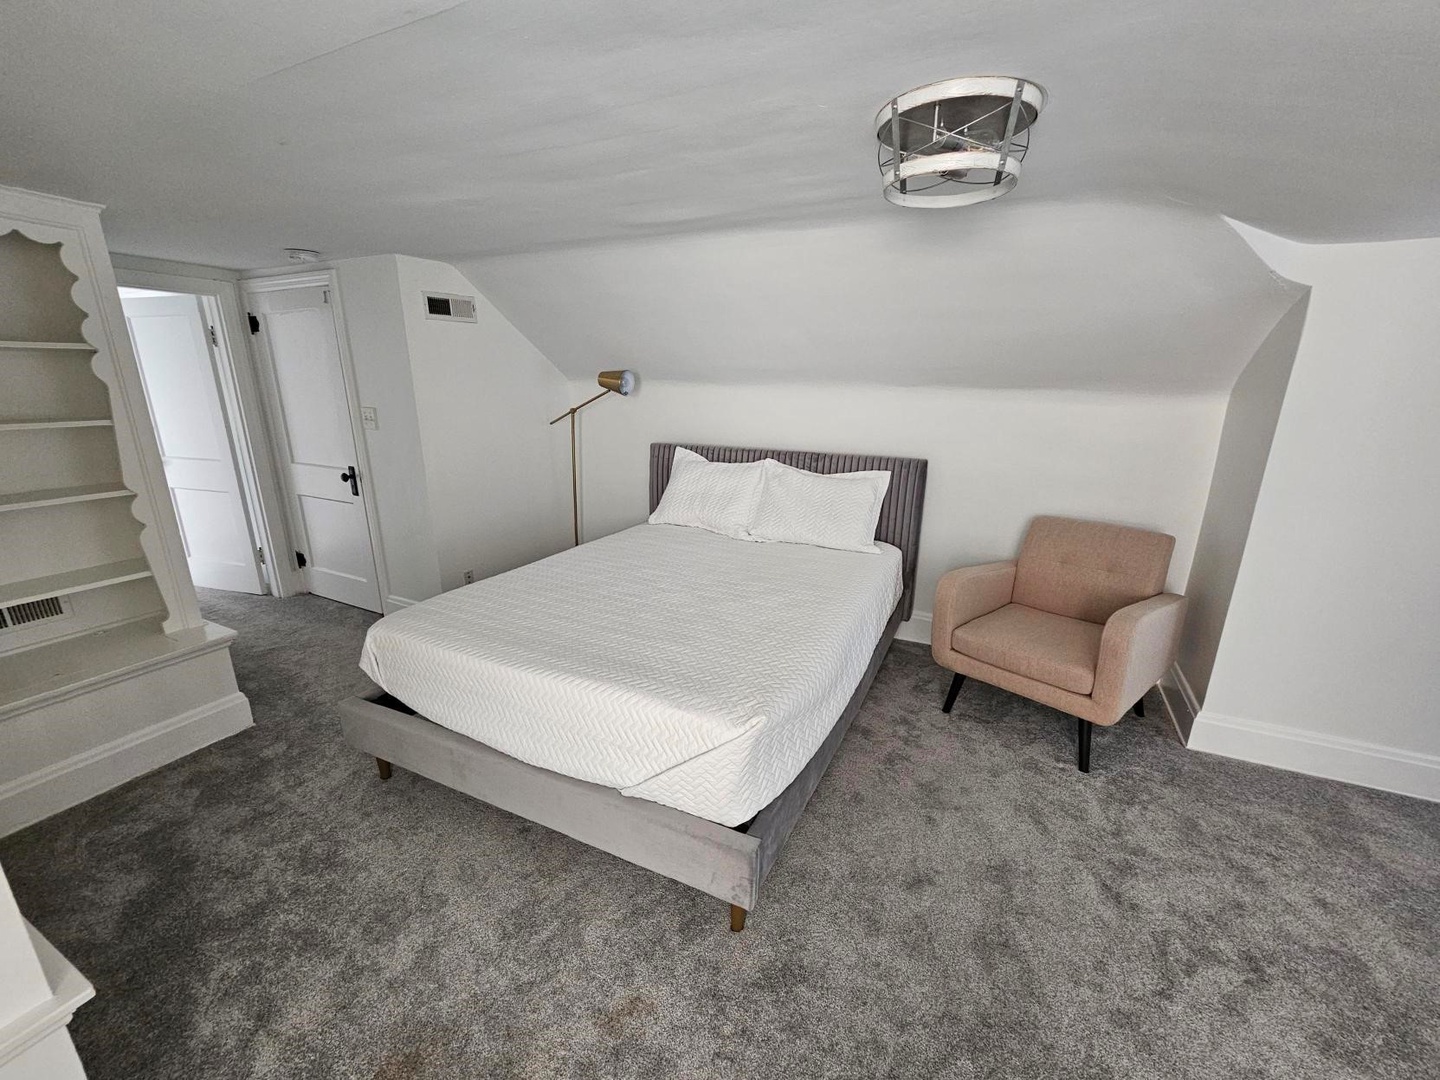 Unit 2 – The 3rd floor attic bedroom area includes a cozy queen bed & armchair